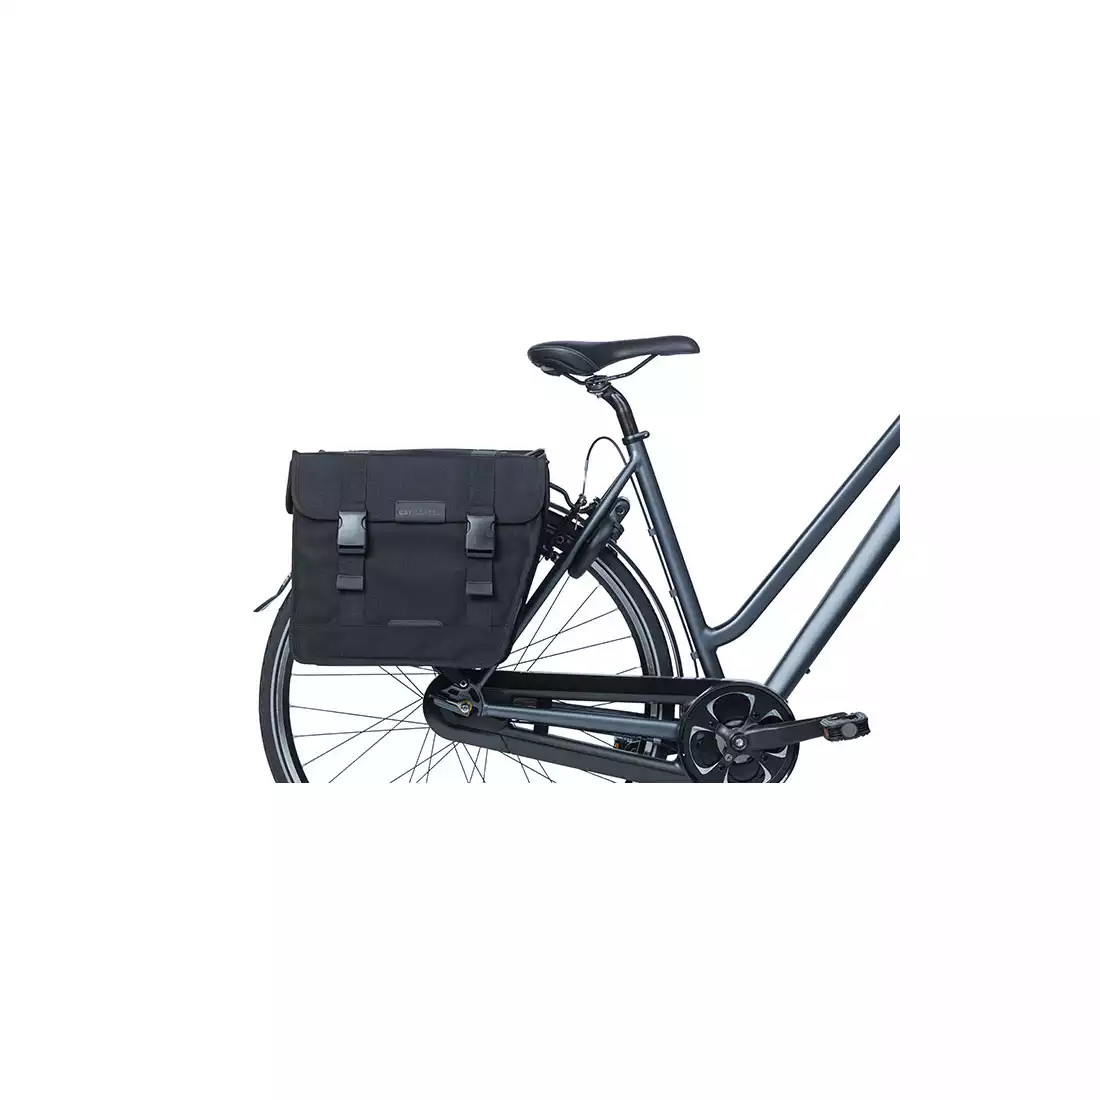 BASIL KAVAN ECO CLASSIC ROUNDED DOUBLE BAG 46L, kerékpár csomagtartó táska, black 